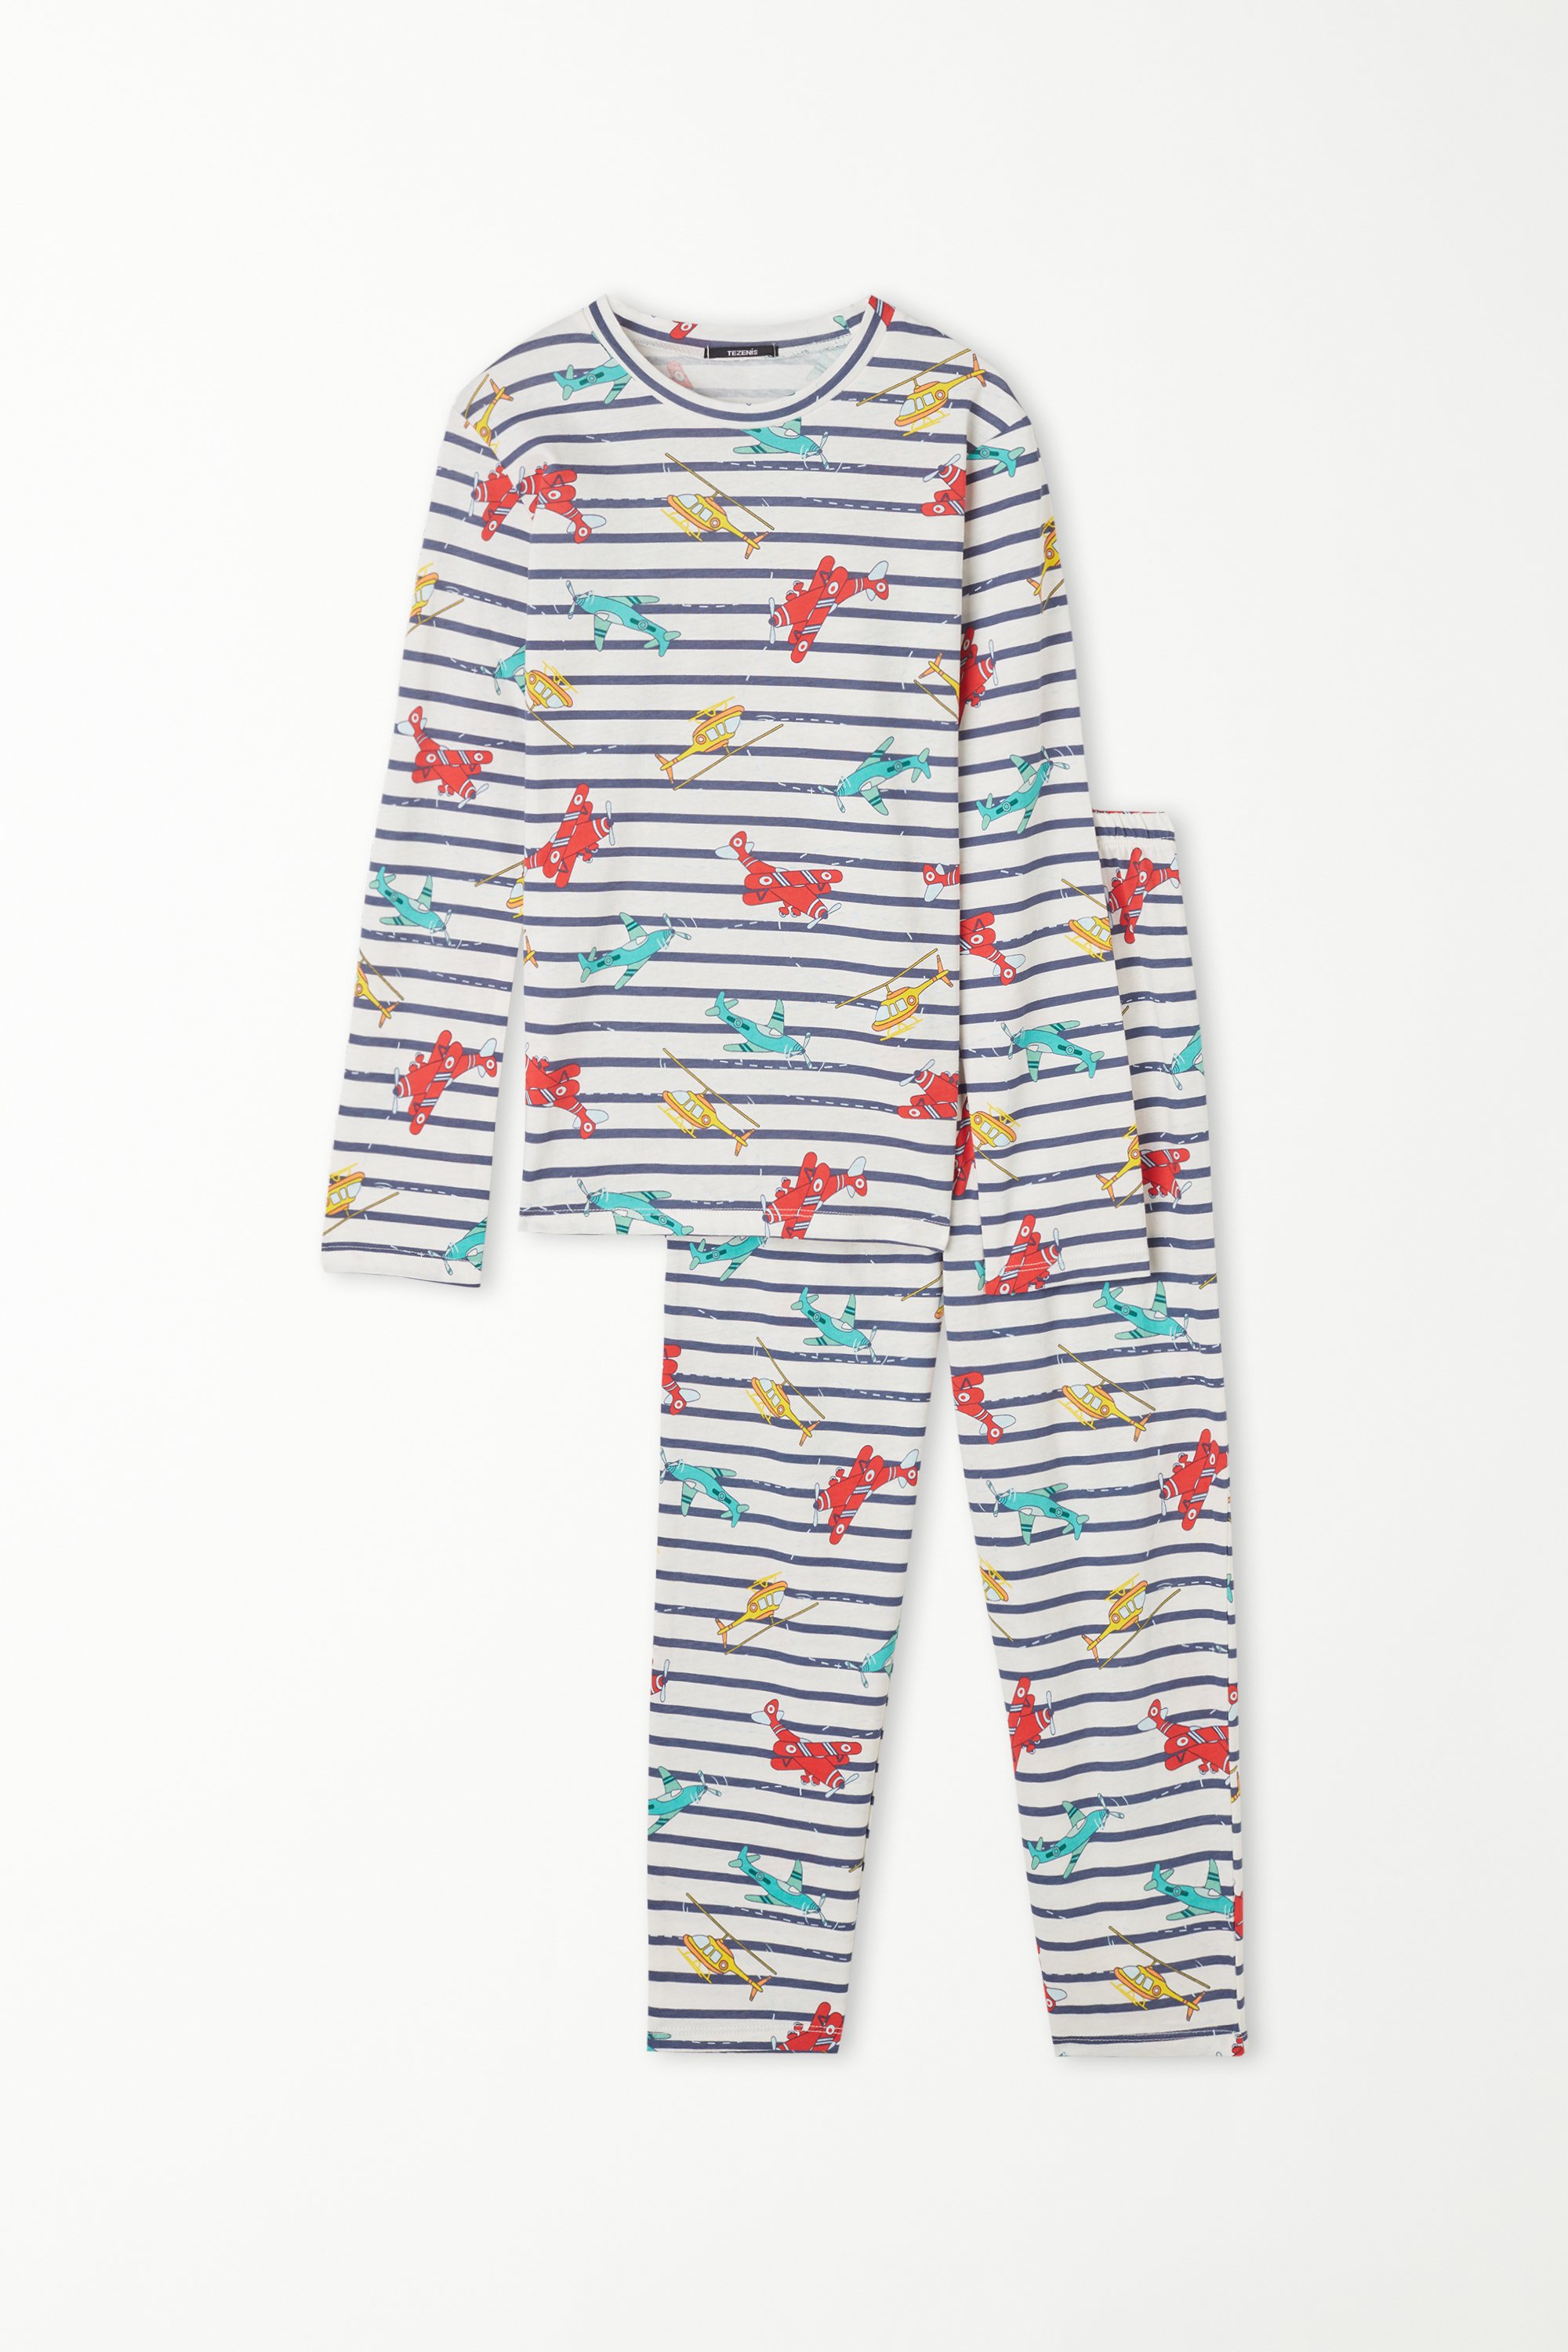 Langer Pyjama aus Baumwolle mit Flugzeug-Streifen-Print